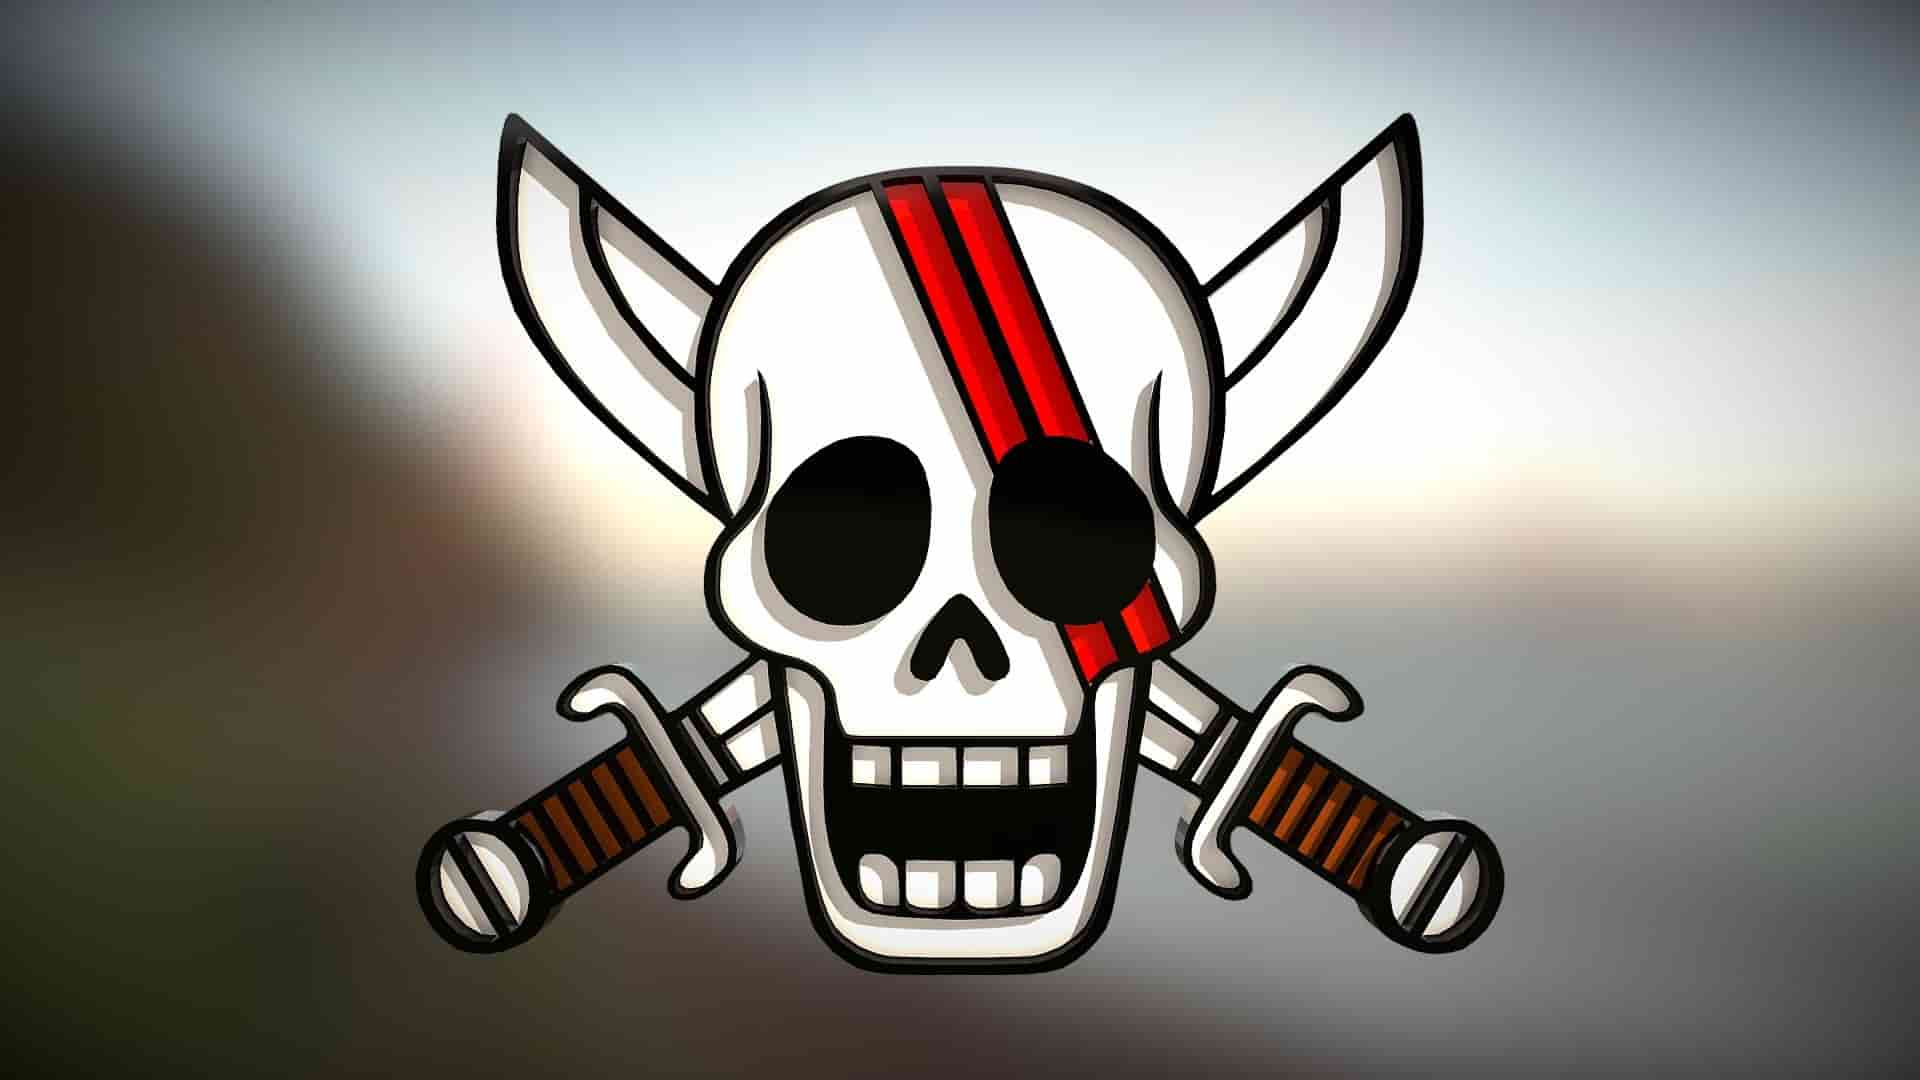 Share Logo Băng Hải Tặc Tóc Đỏ